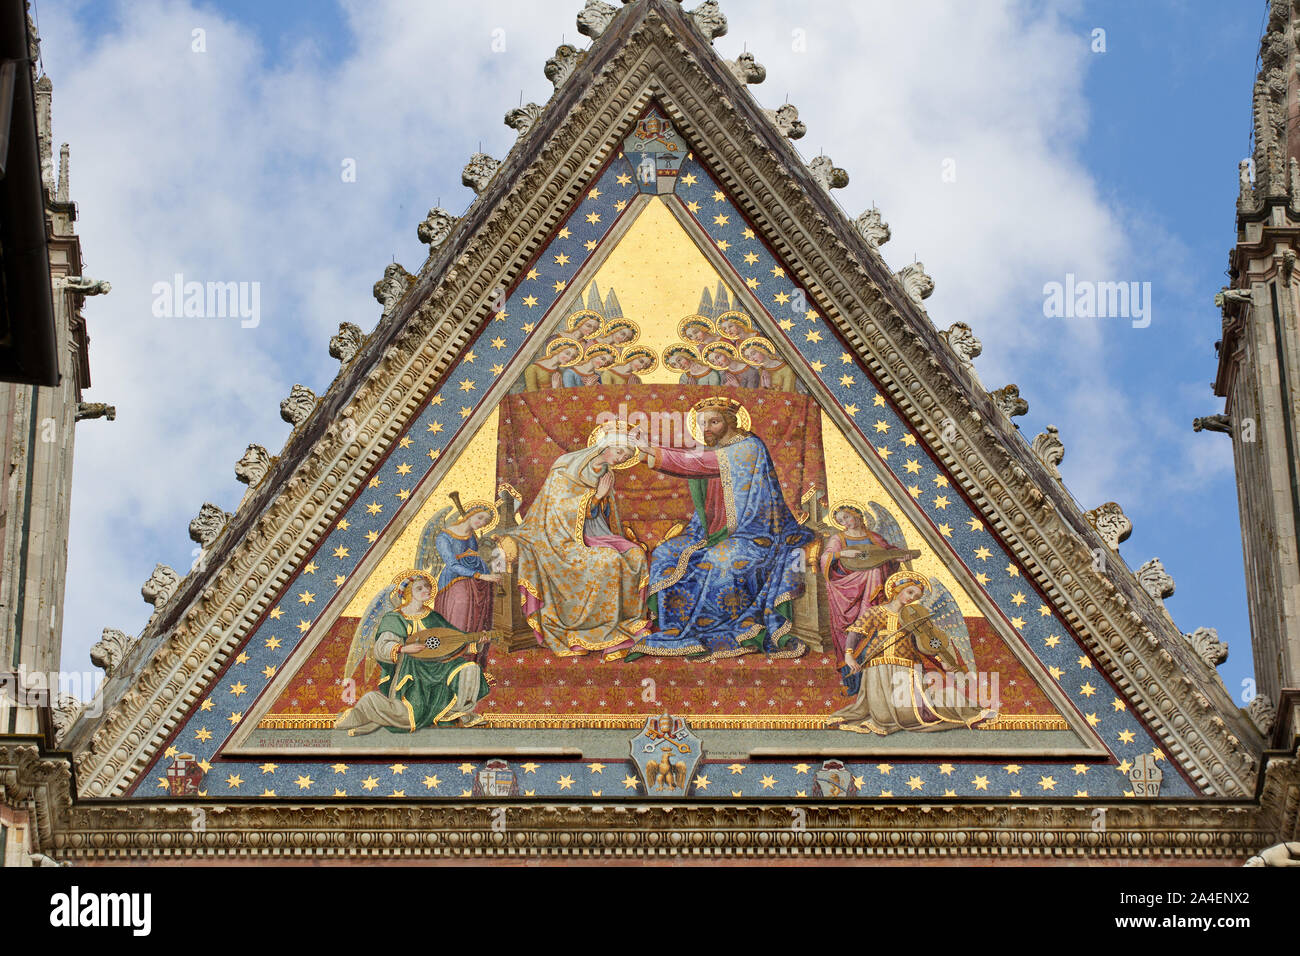 Couronnement de la Vierge, mosaïque sur le haut pignon de la cathédrale d'Orvieto dédiée à l'Assomption de la Vierge Marie (Duomo di Orvieto) - 14e C Banque D'Images